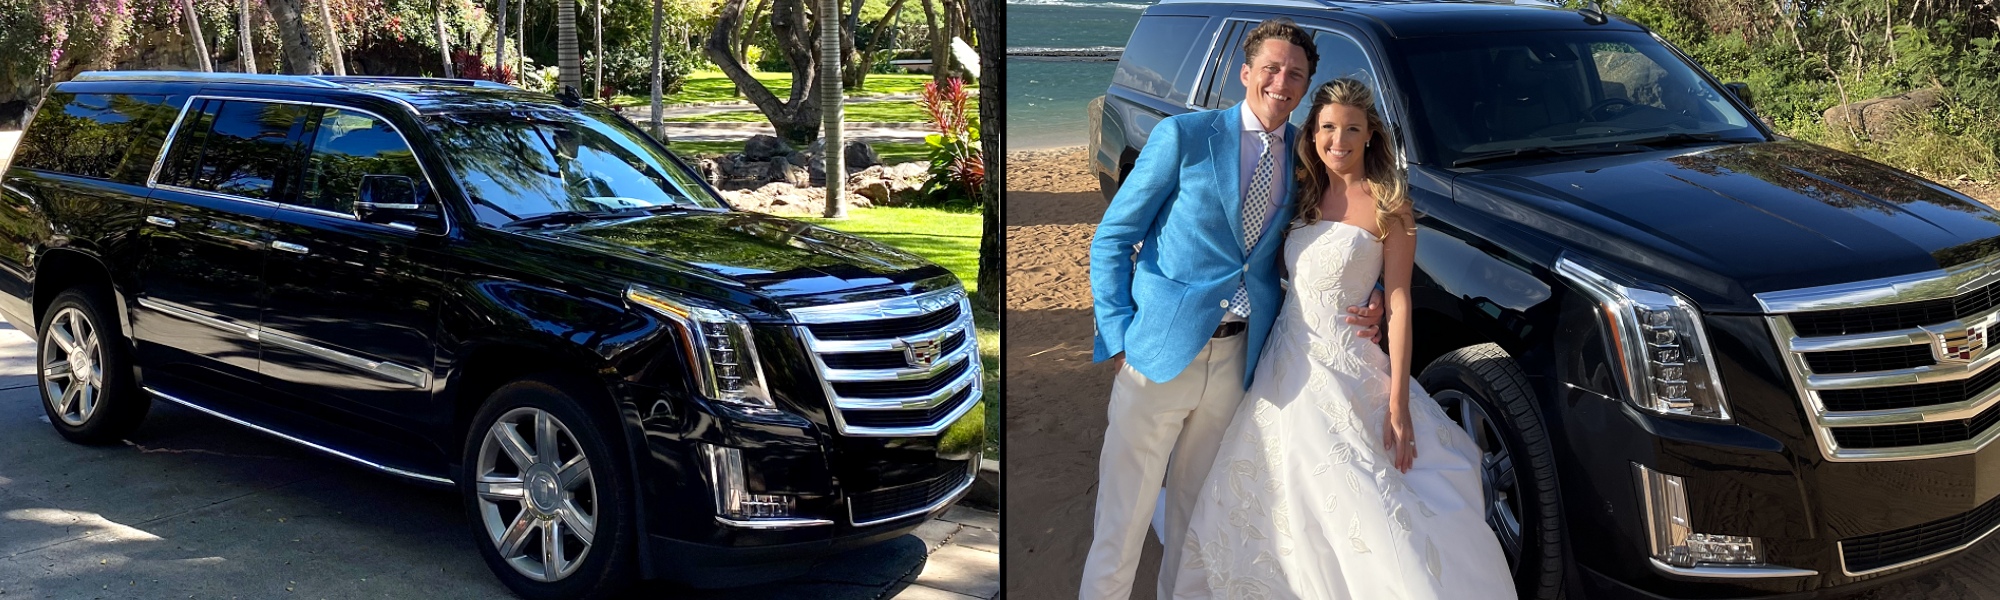 Big Island Wedding Transportation